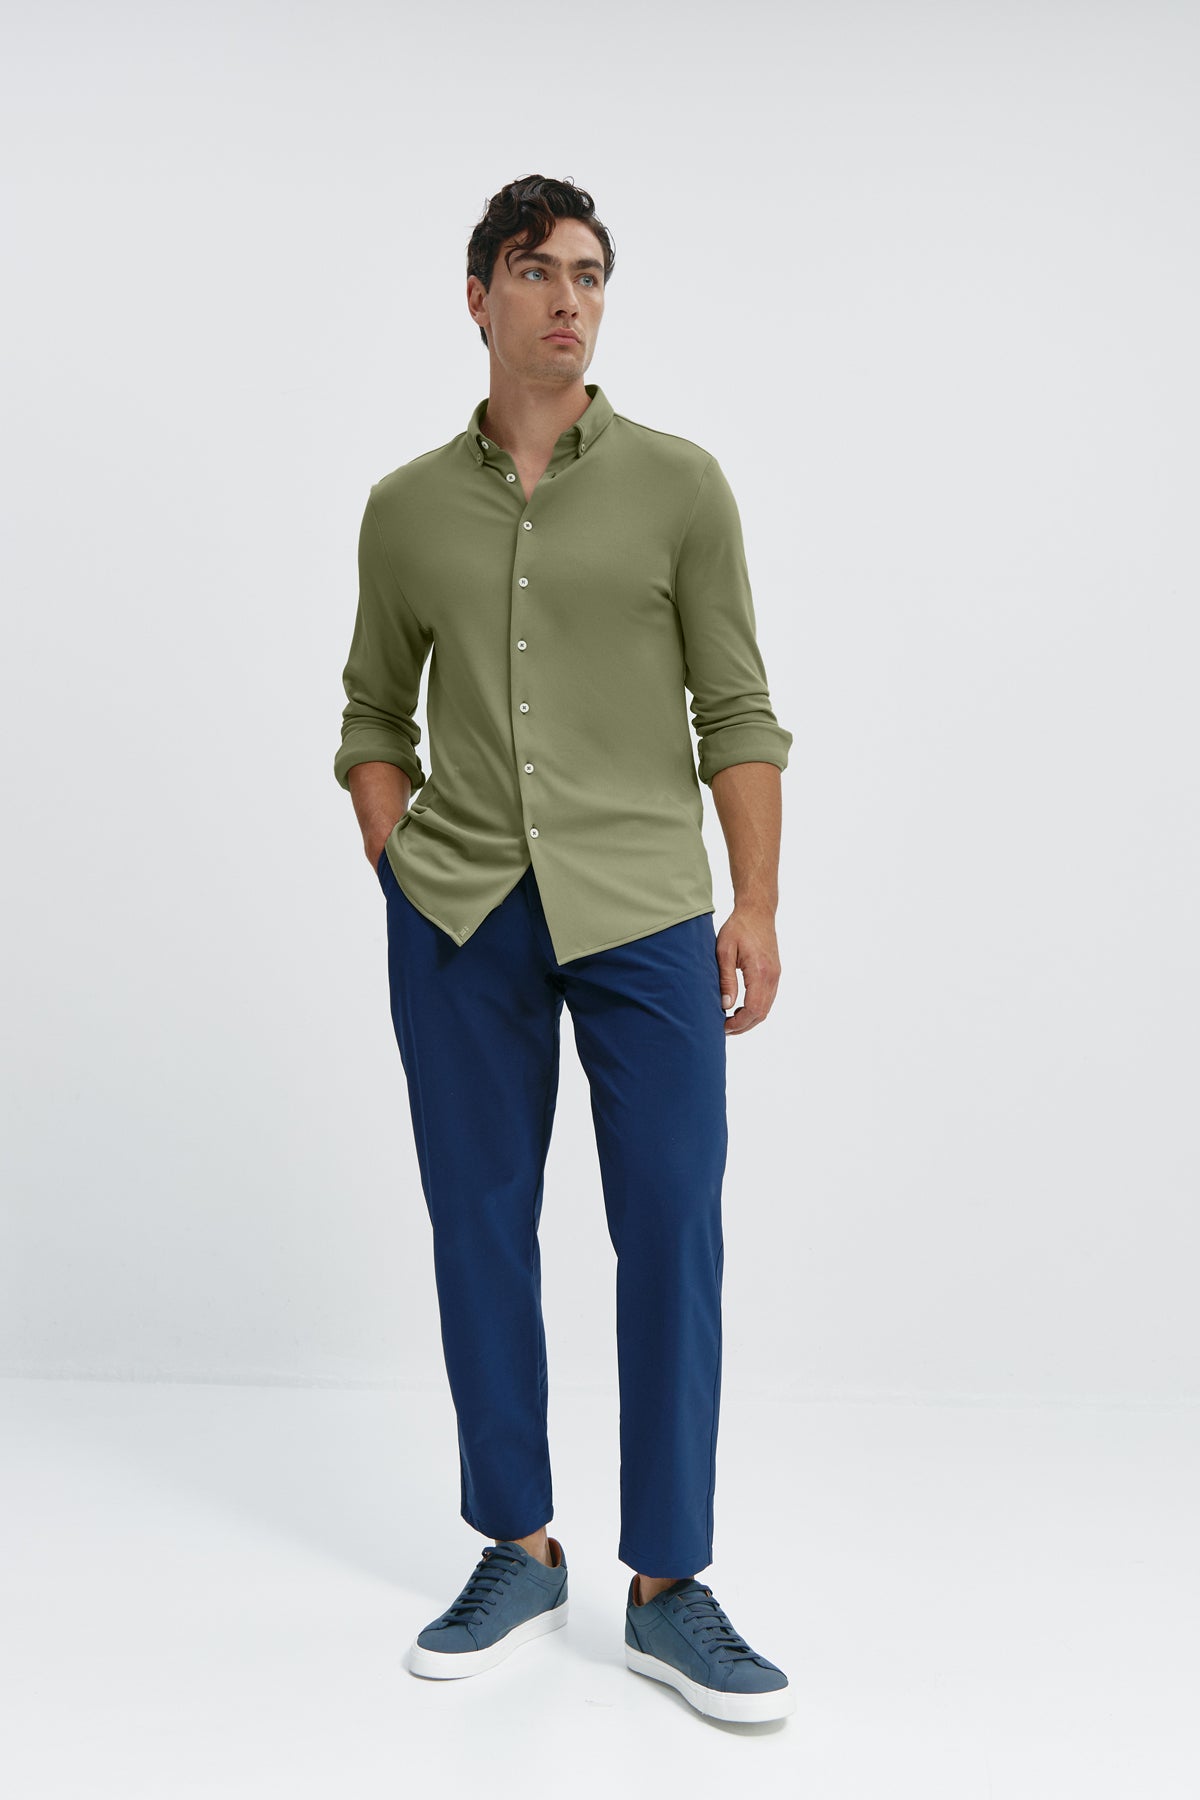 Camisa casual verde malaquita para hombre sin arrugas ni manchas. Manga larga, antiarrugas y antimanchas.Foto cuerpo entero